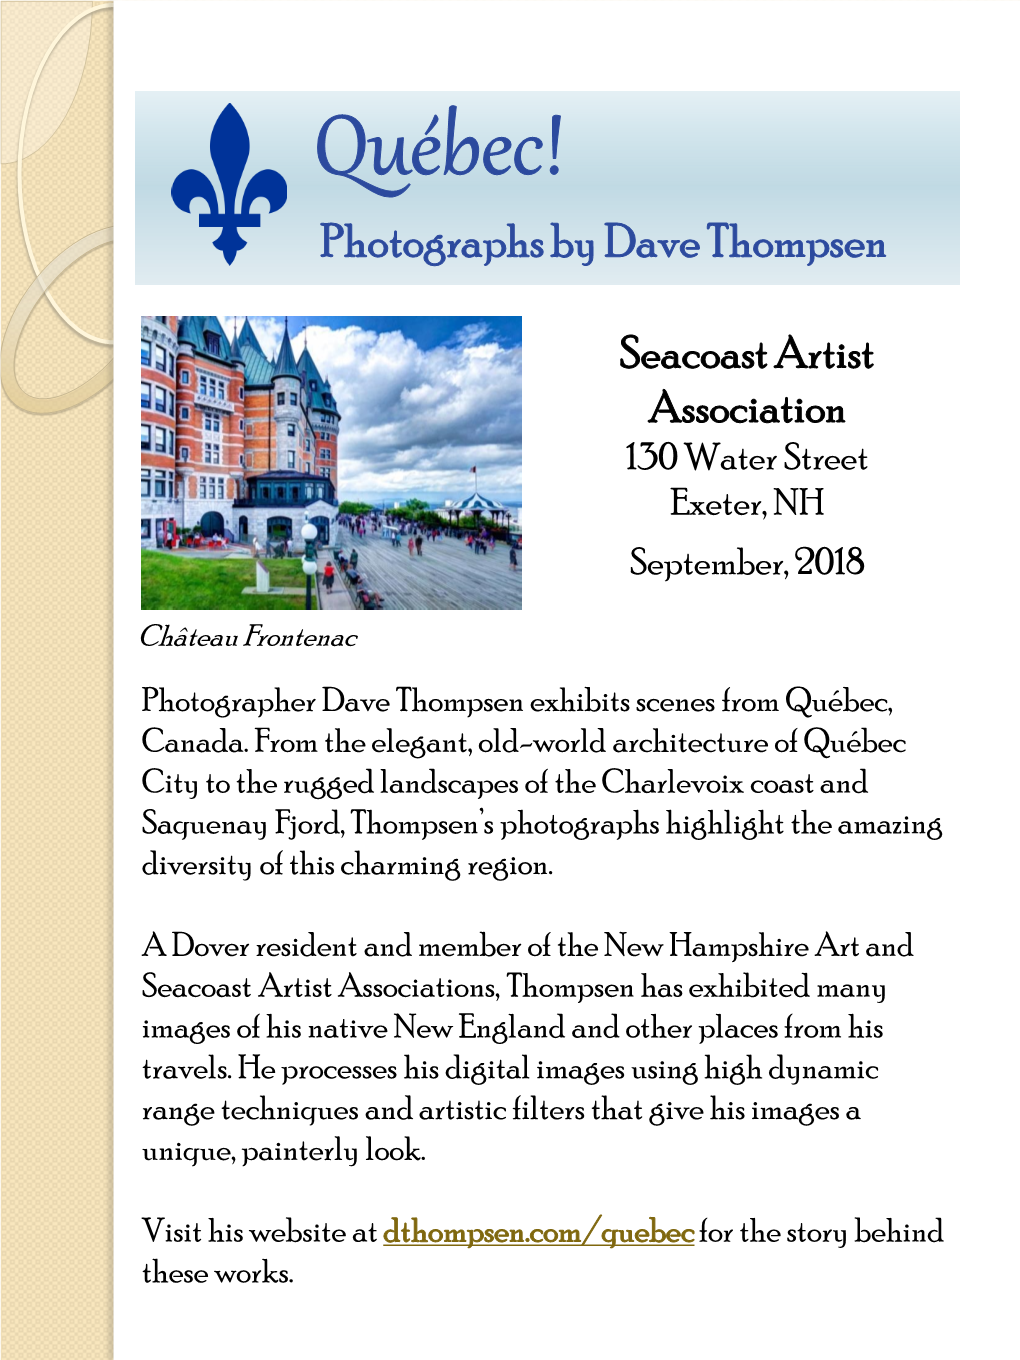 Quebec! Exhibition by Dave Thompsen